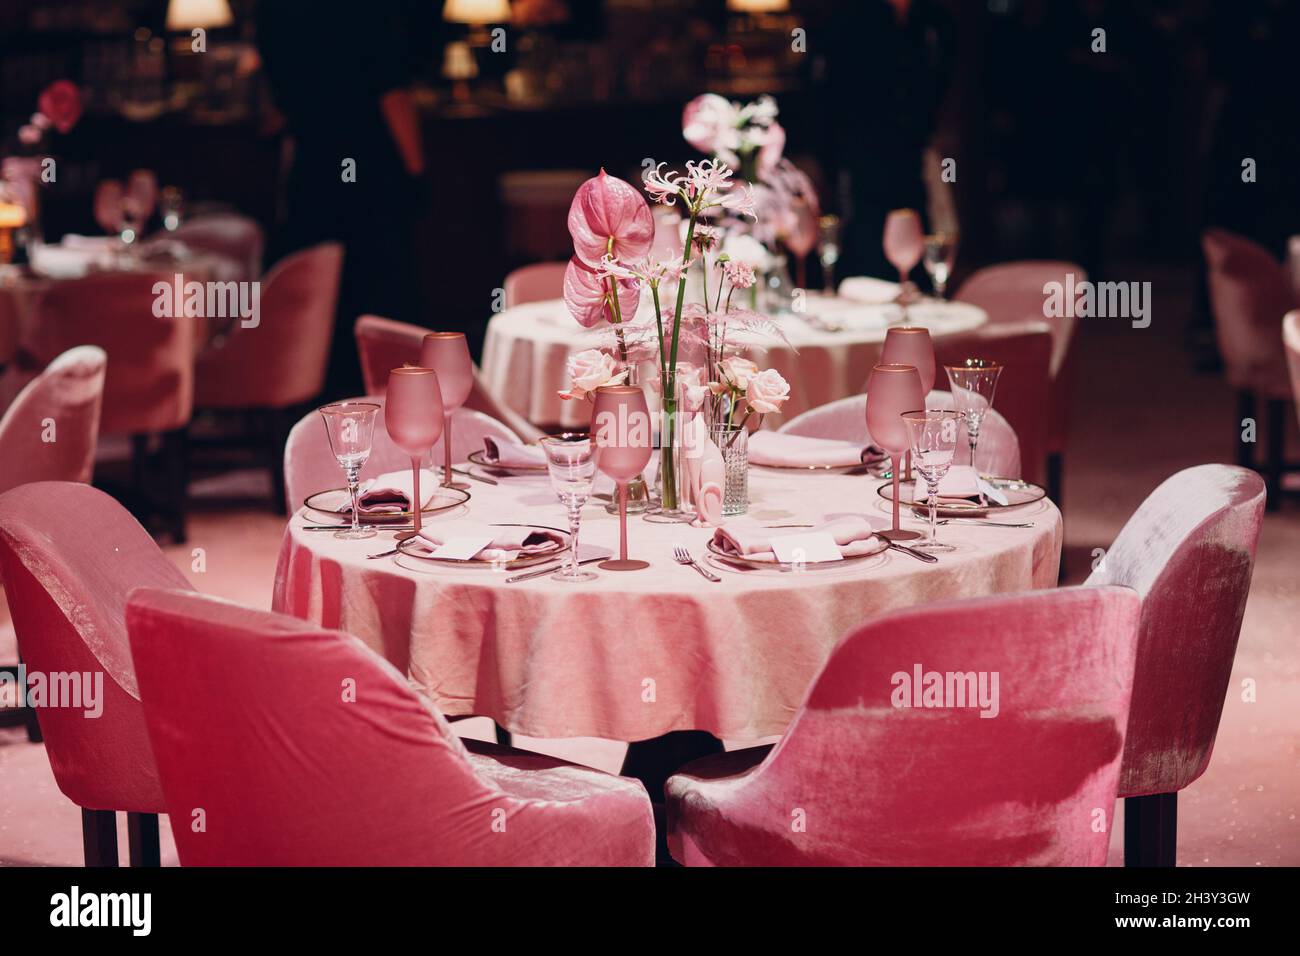 Dîner romantique table au décor rose au restaurant Banque D'Images